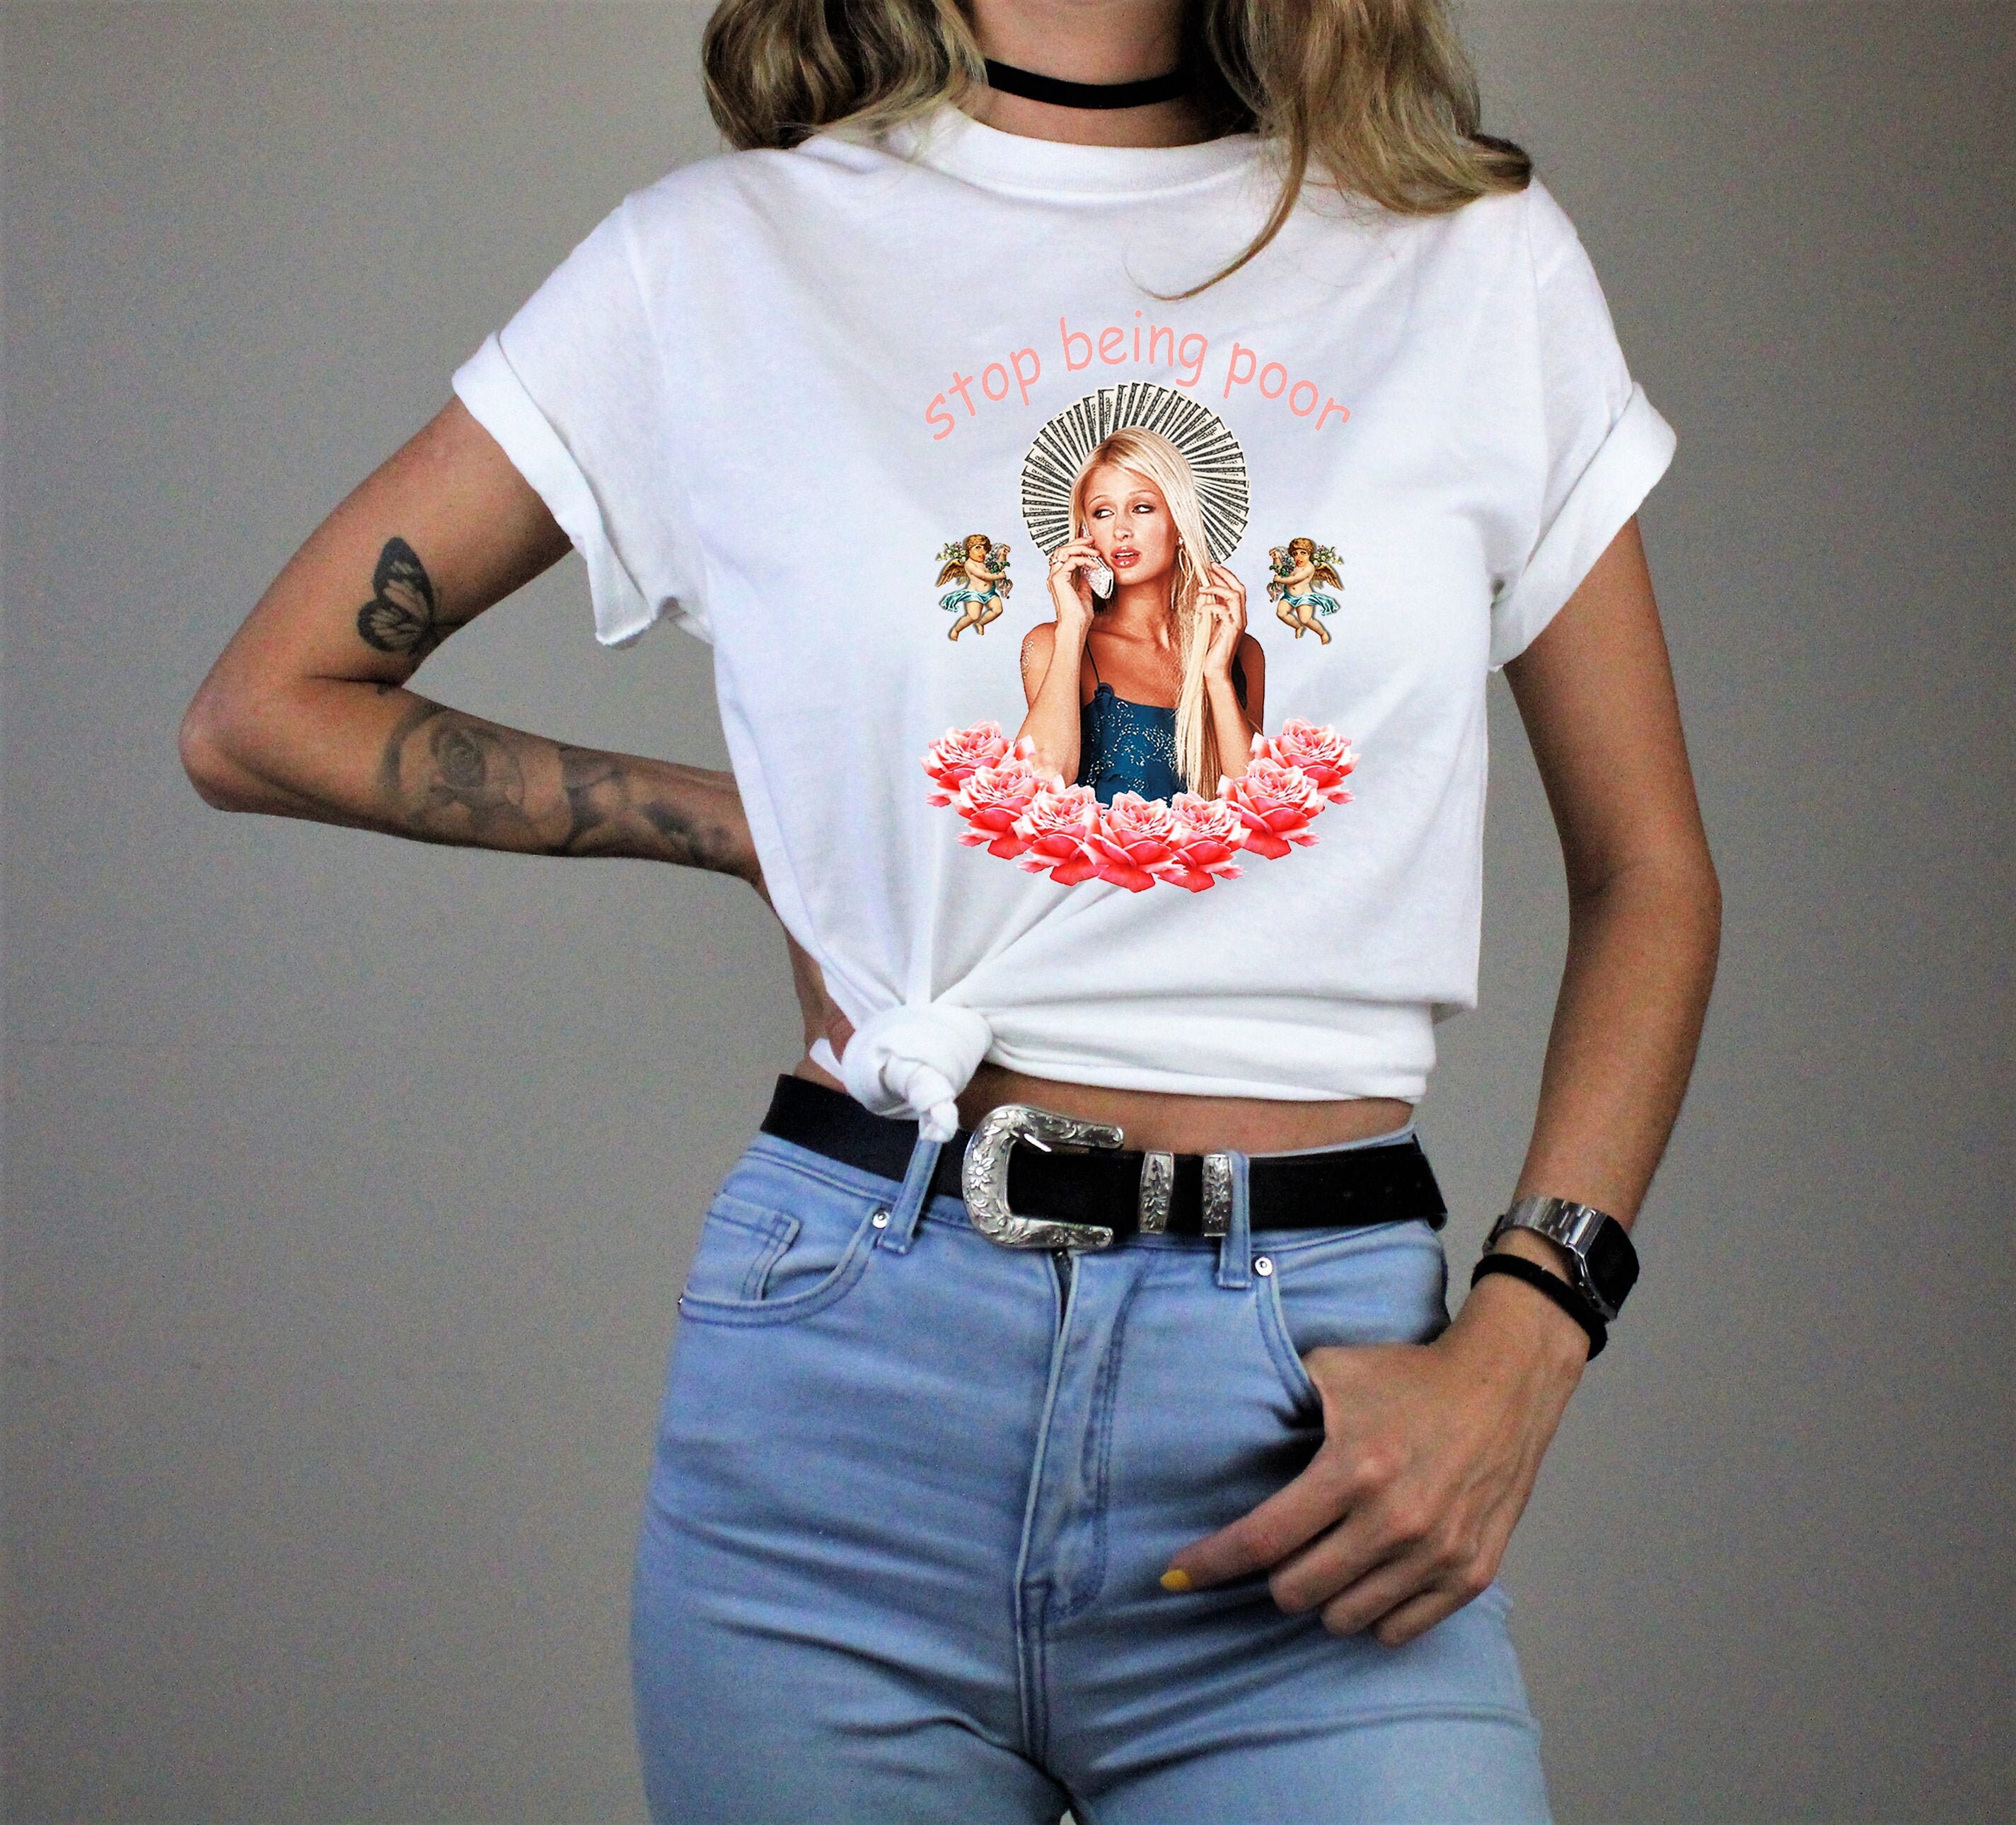 Paris Hilton Shirt Stop Being Poor Tee 00's T-shirt - Etsy UK